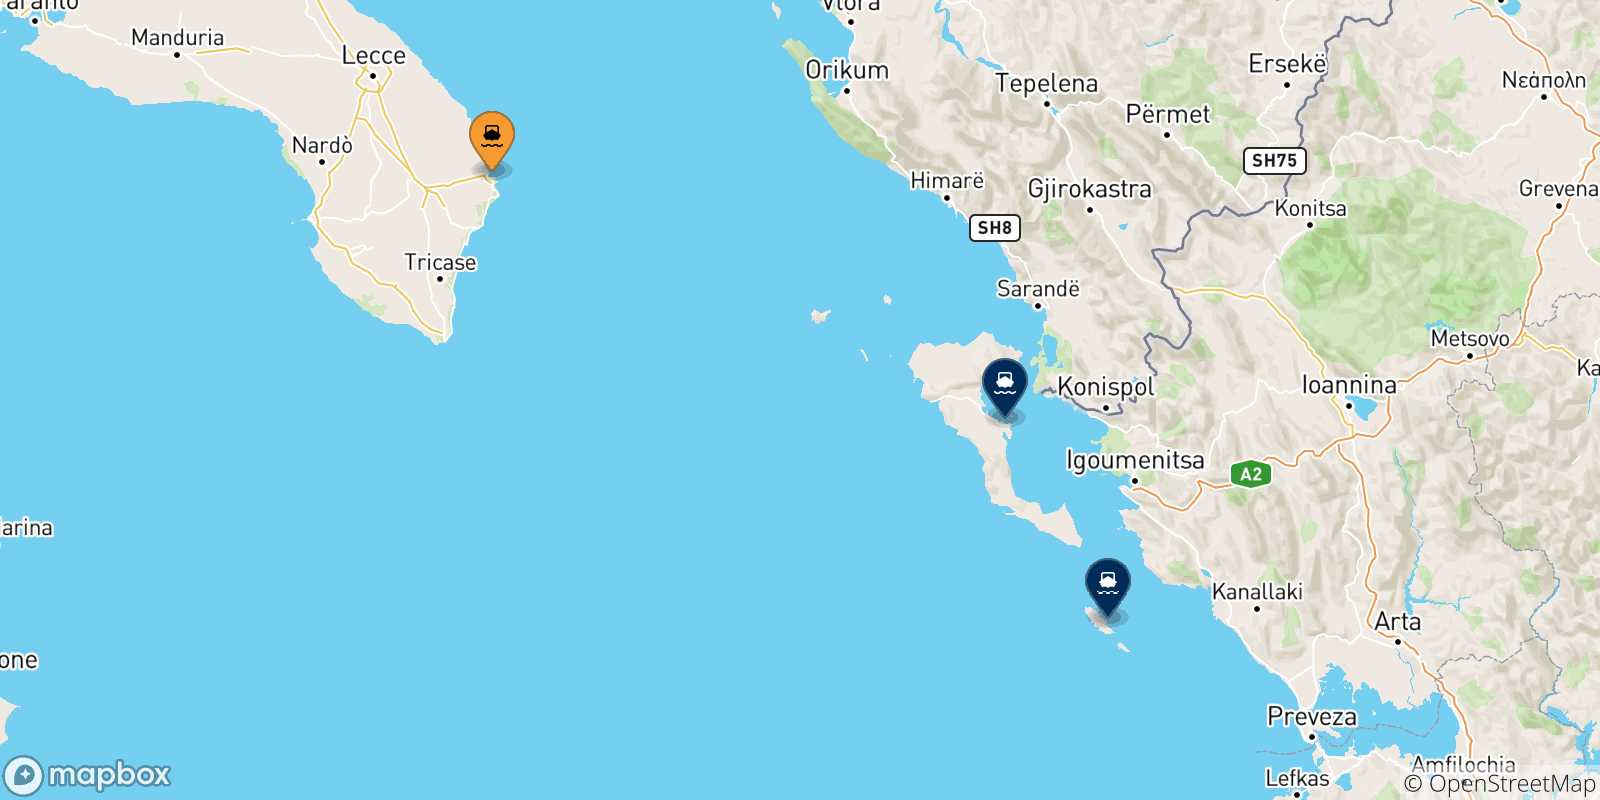 Mappa delle possibili rotte tra Otranto e la Grecia